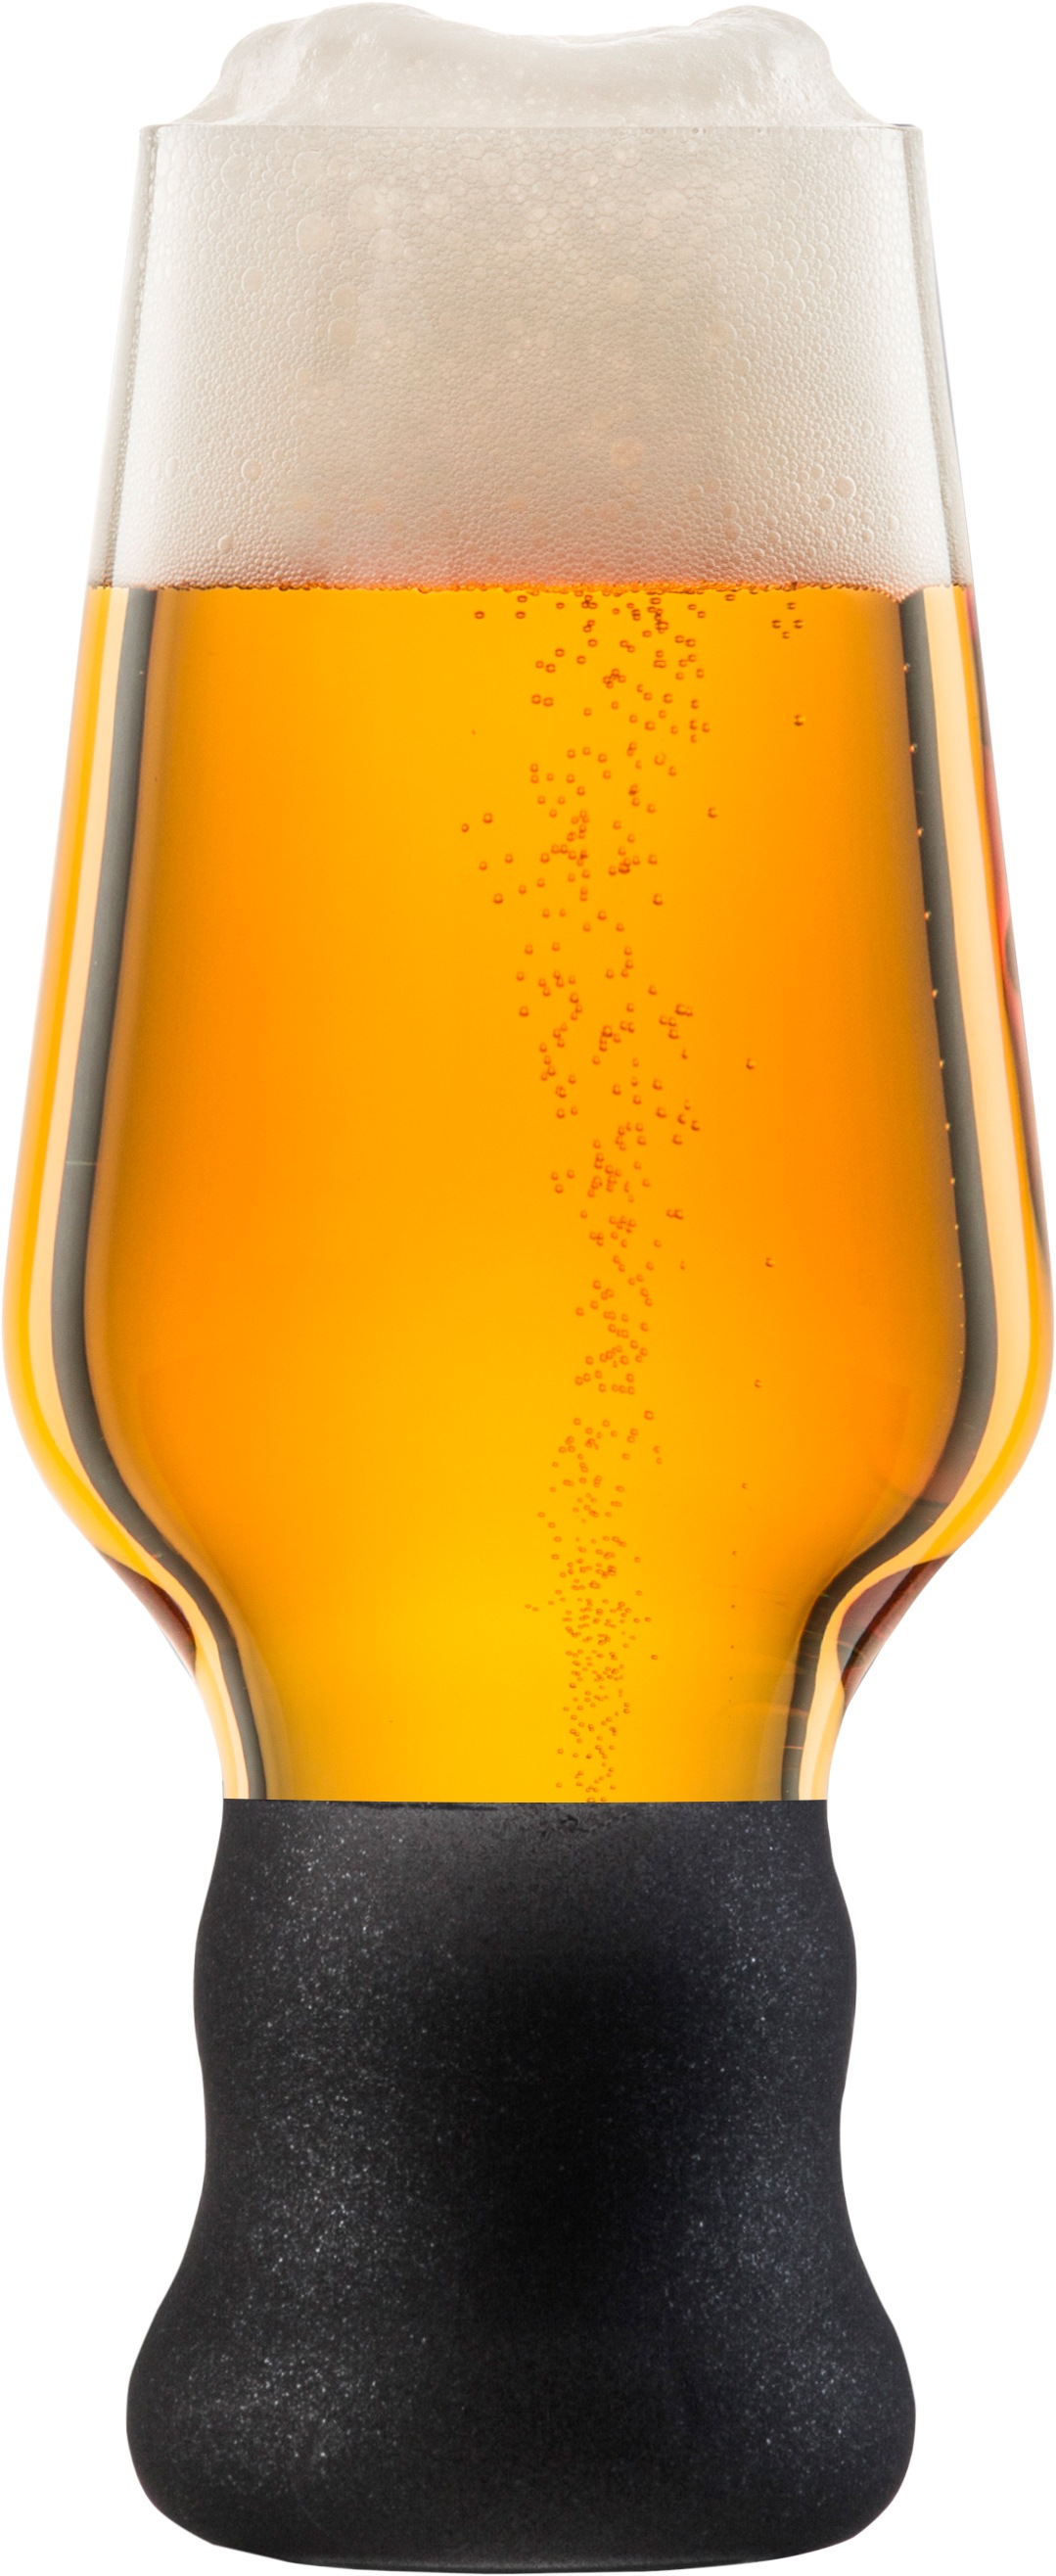 Eisch Bierglas »Craft Beer Becher«, (Set, 2 tlg.), bleifrei, 450 ml, 2-teilig